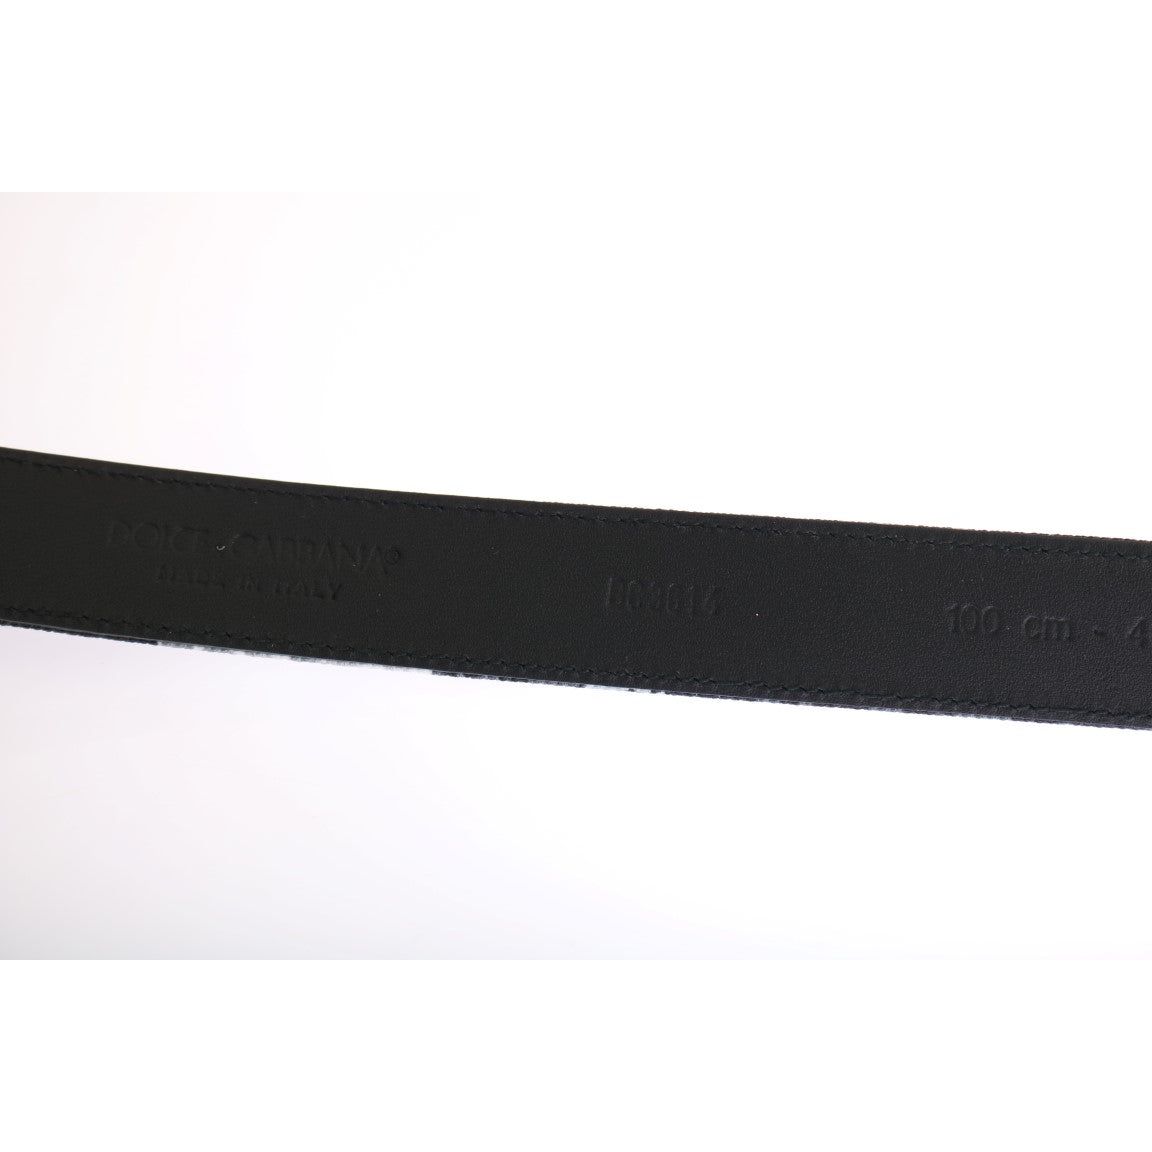 Dolce & Gabbana Elegant Floral Patterned Men's Luxury Belt black-cayman-linen-leather-belt Belt 456472-black-cayman-linen-leather-belt-3.jpg